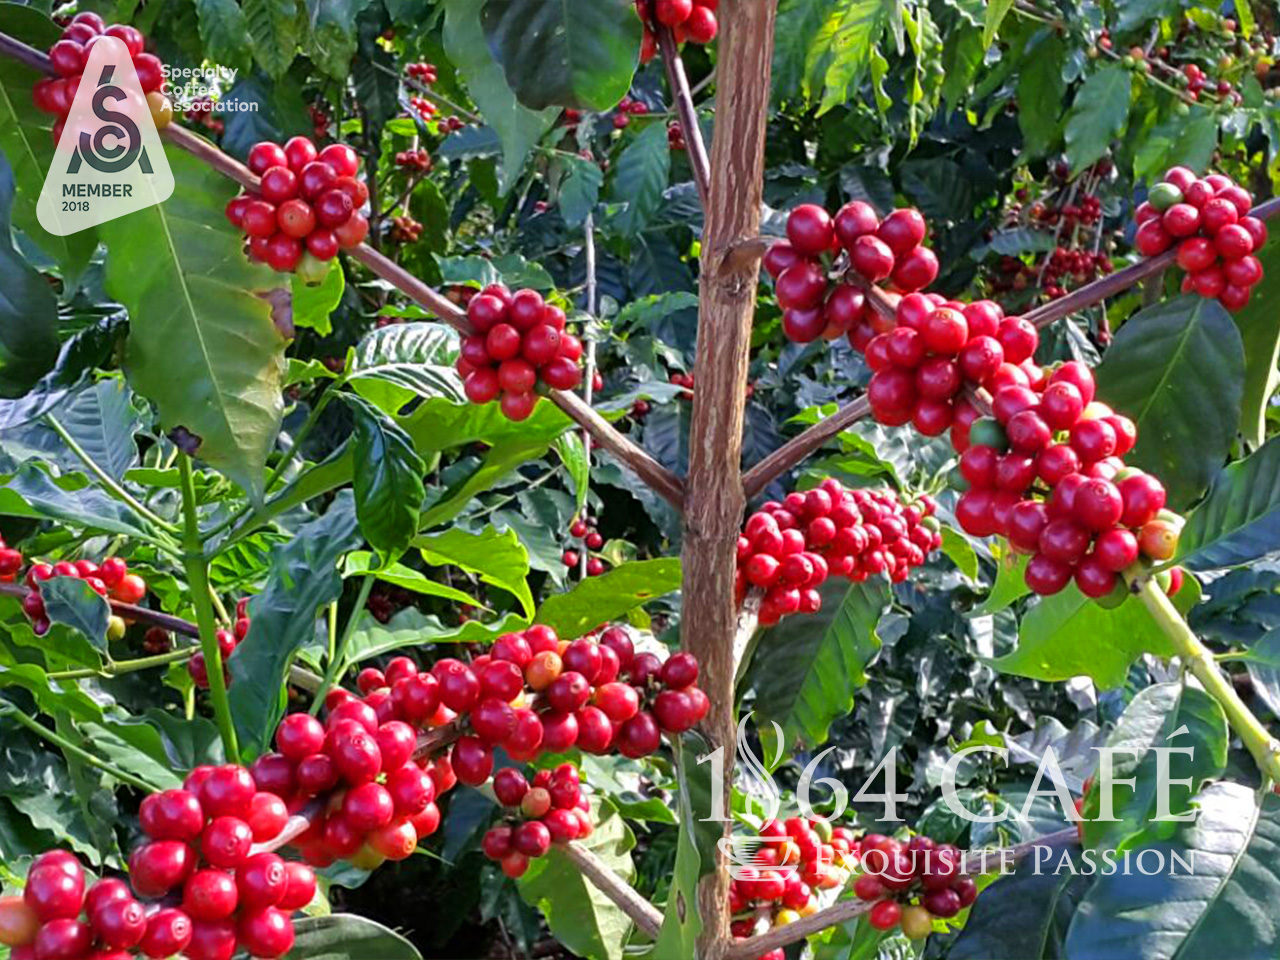 Cà phê hảo hạng (Specialty Coffee) tinh khiết không tẩm không độn El Salvador Providencia hạt khối lượng tịnh 220g - 1864 CAFÉ